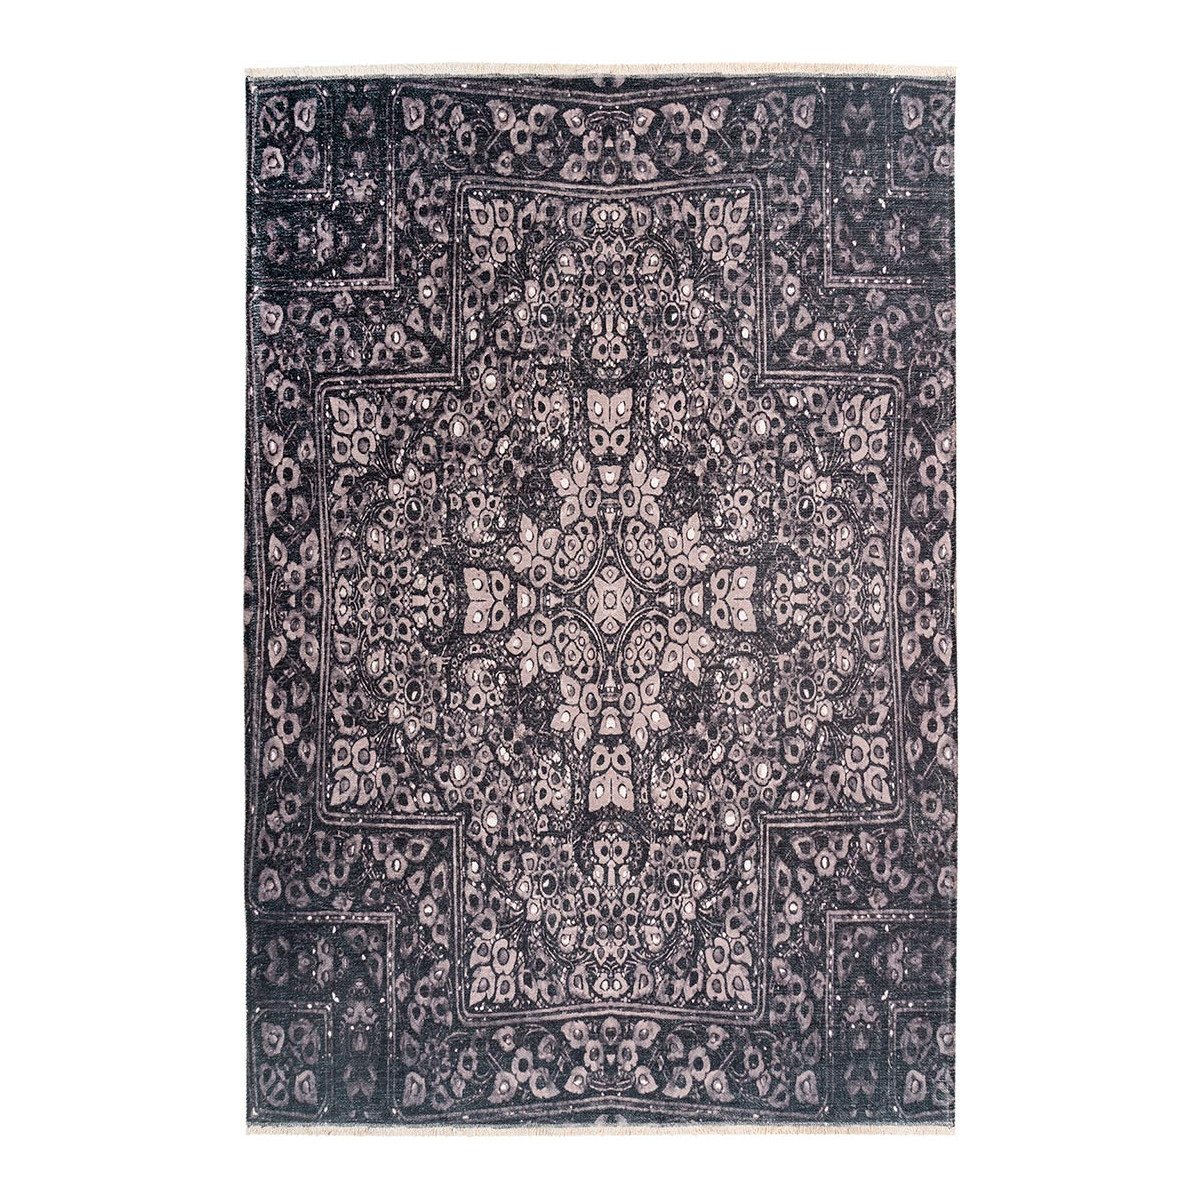 Tapis ethnique en polyester gris 115x170